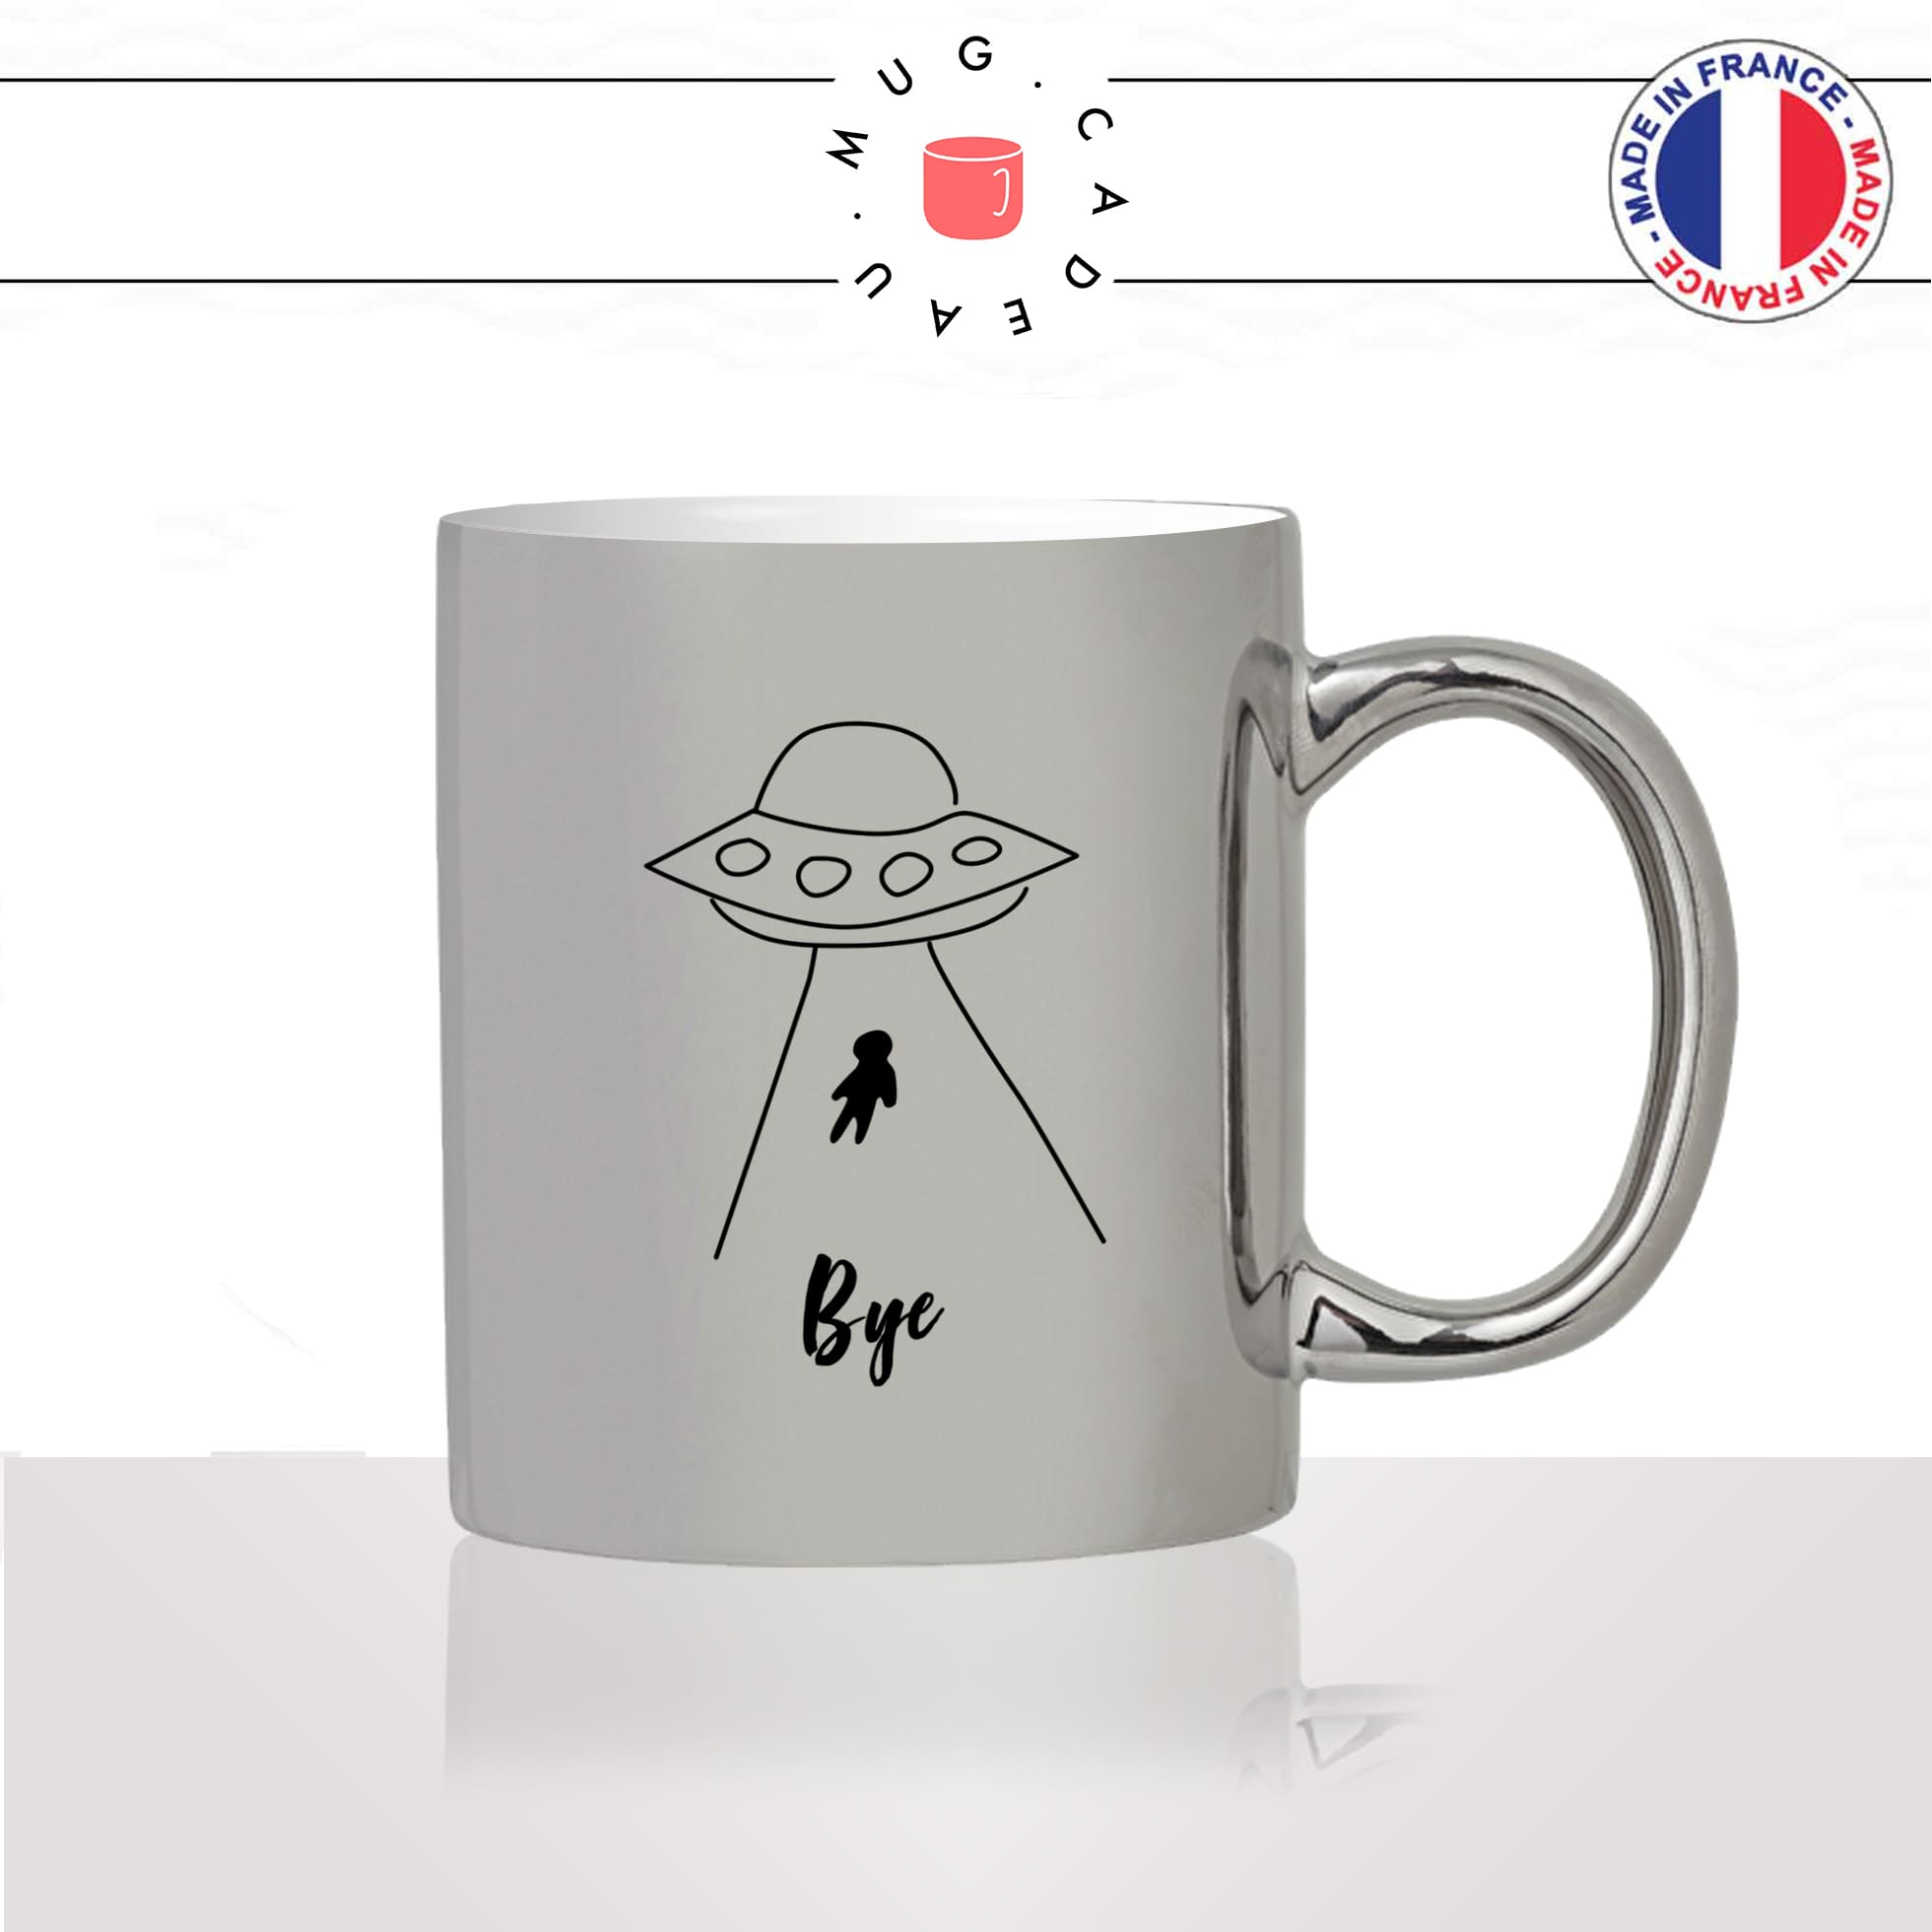 mug-tasse-argent-argenté-silver-espace-astronaute-alien-lune-fusée-engin-spacial-planetes-bye-salut-tchao-humour-idée-cadeau-fun-cool-café-thé2